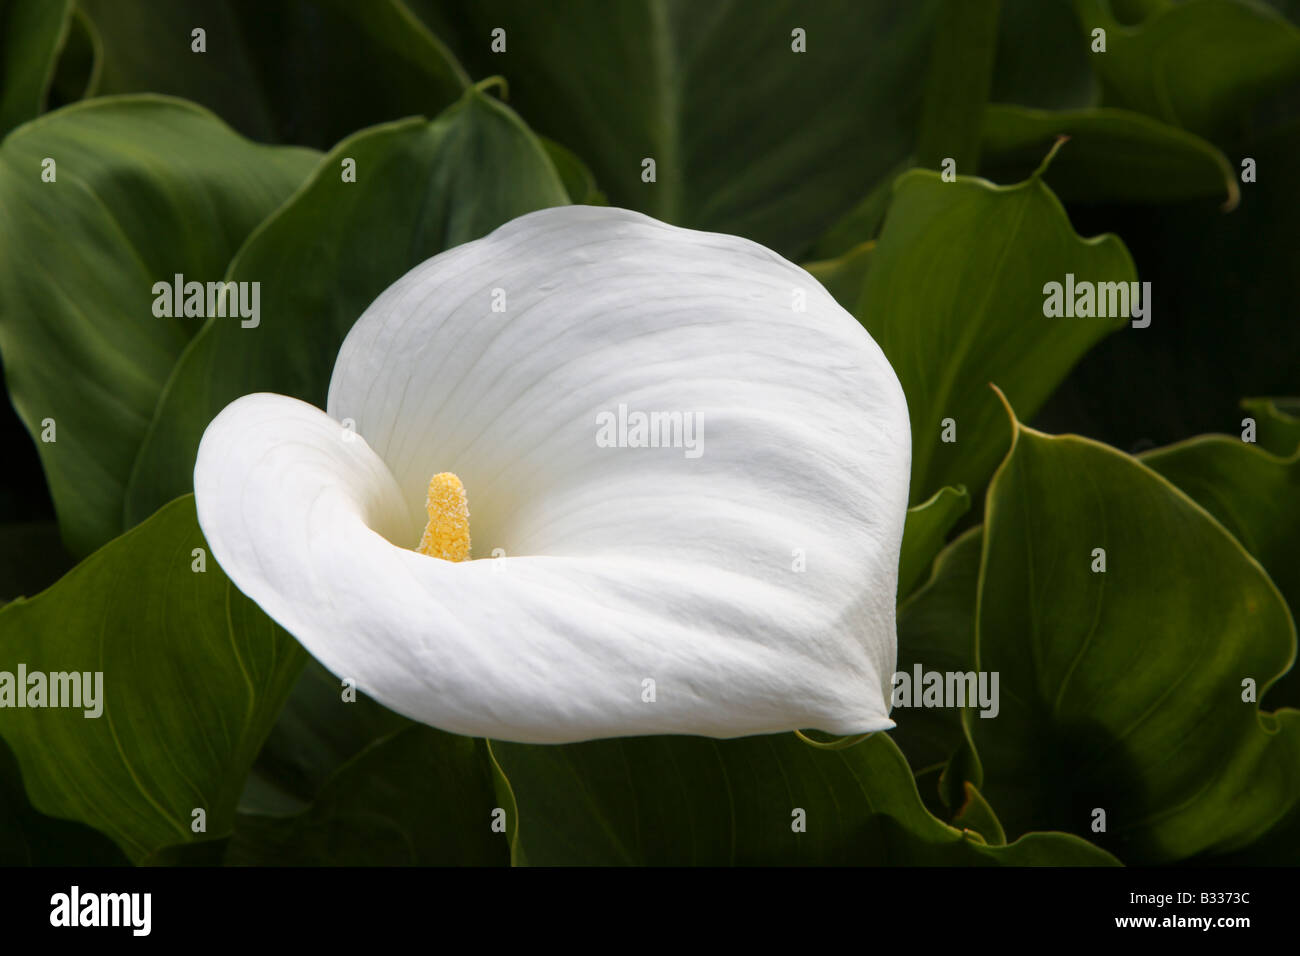 Zantedeschia aethiopica Crowborough, Arum lily Stock Photo